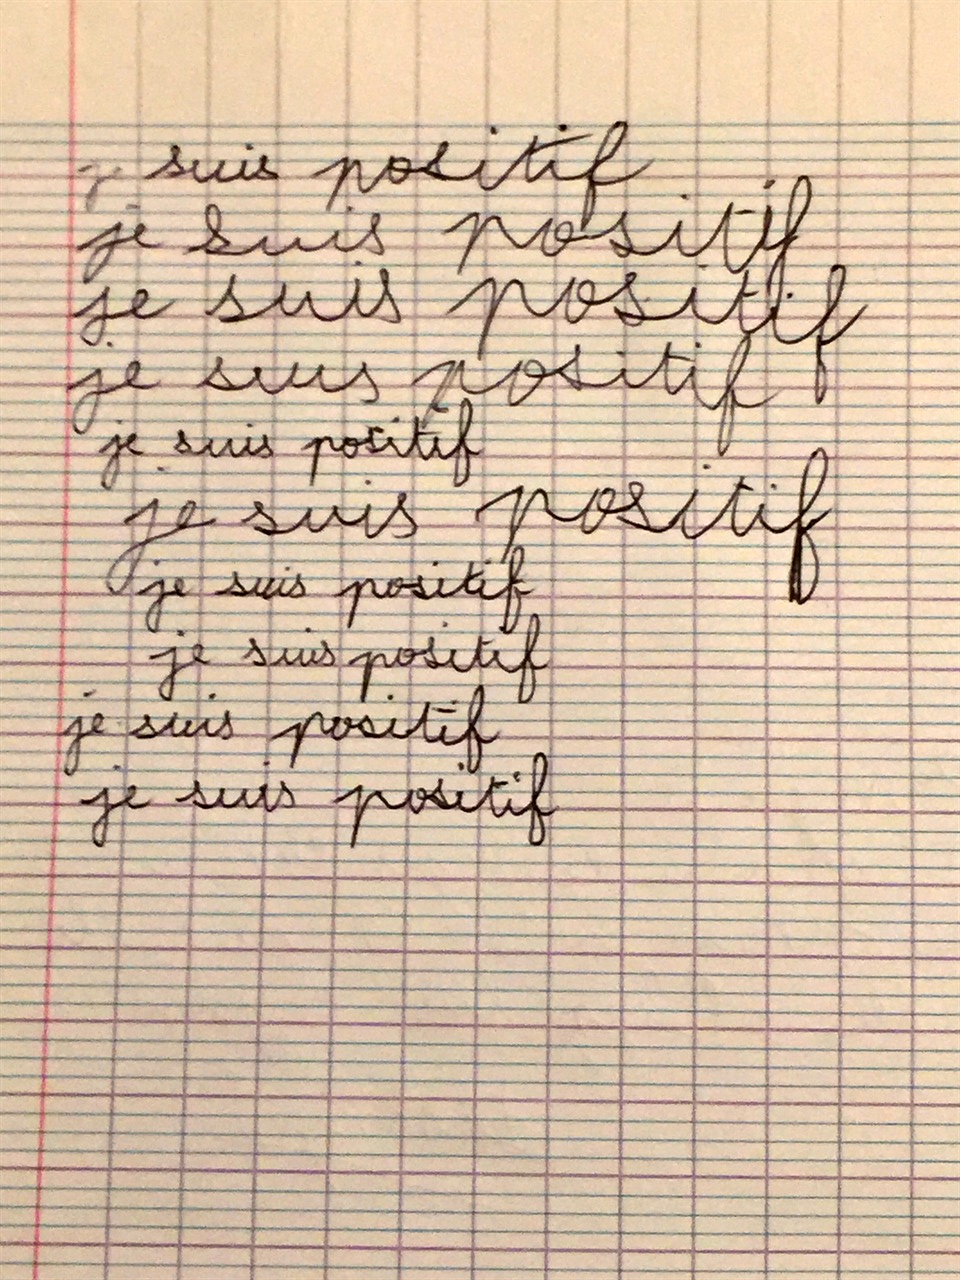 불어로 '나는 긍정적이다'는 확언을 10번 썼다. 